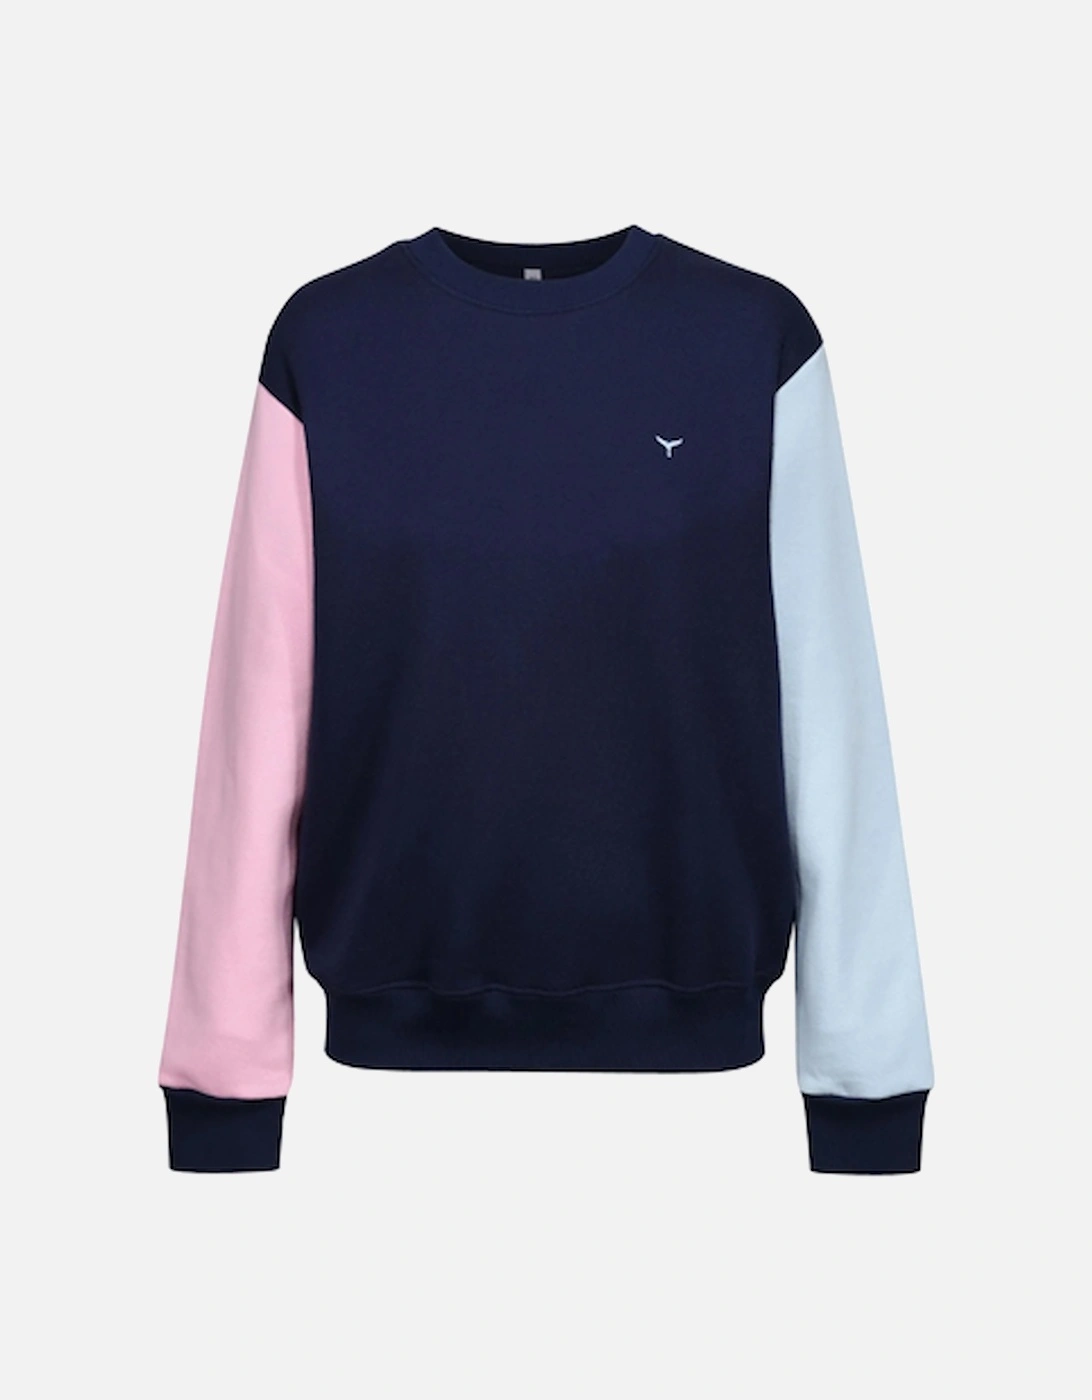 Arnoux Unisex Sweatshirt Navy/Pink/Blue